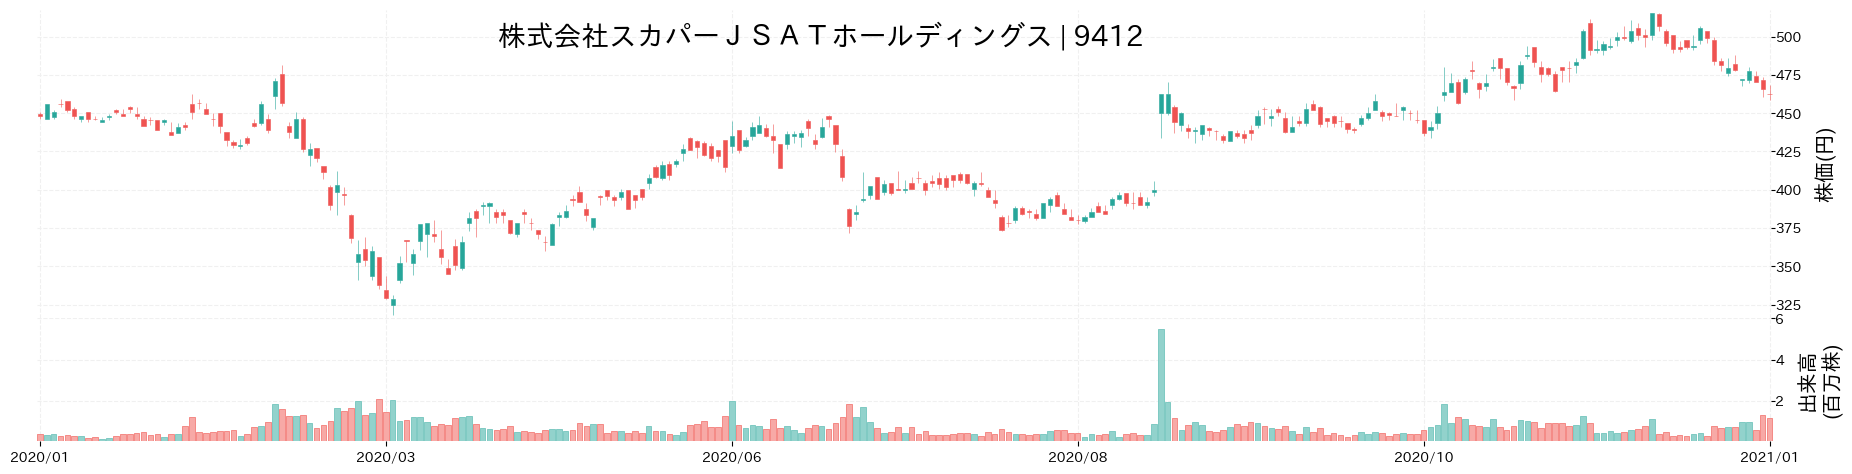 スカパーJSATホールディングスの株価推移(2020)